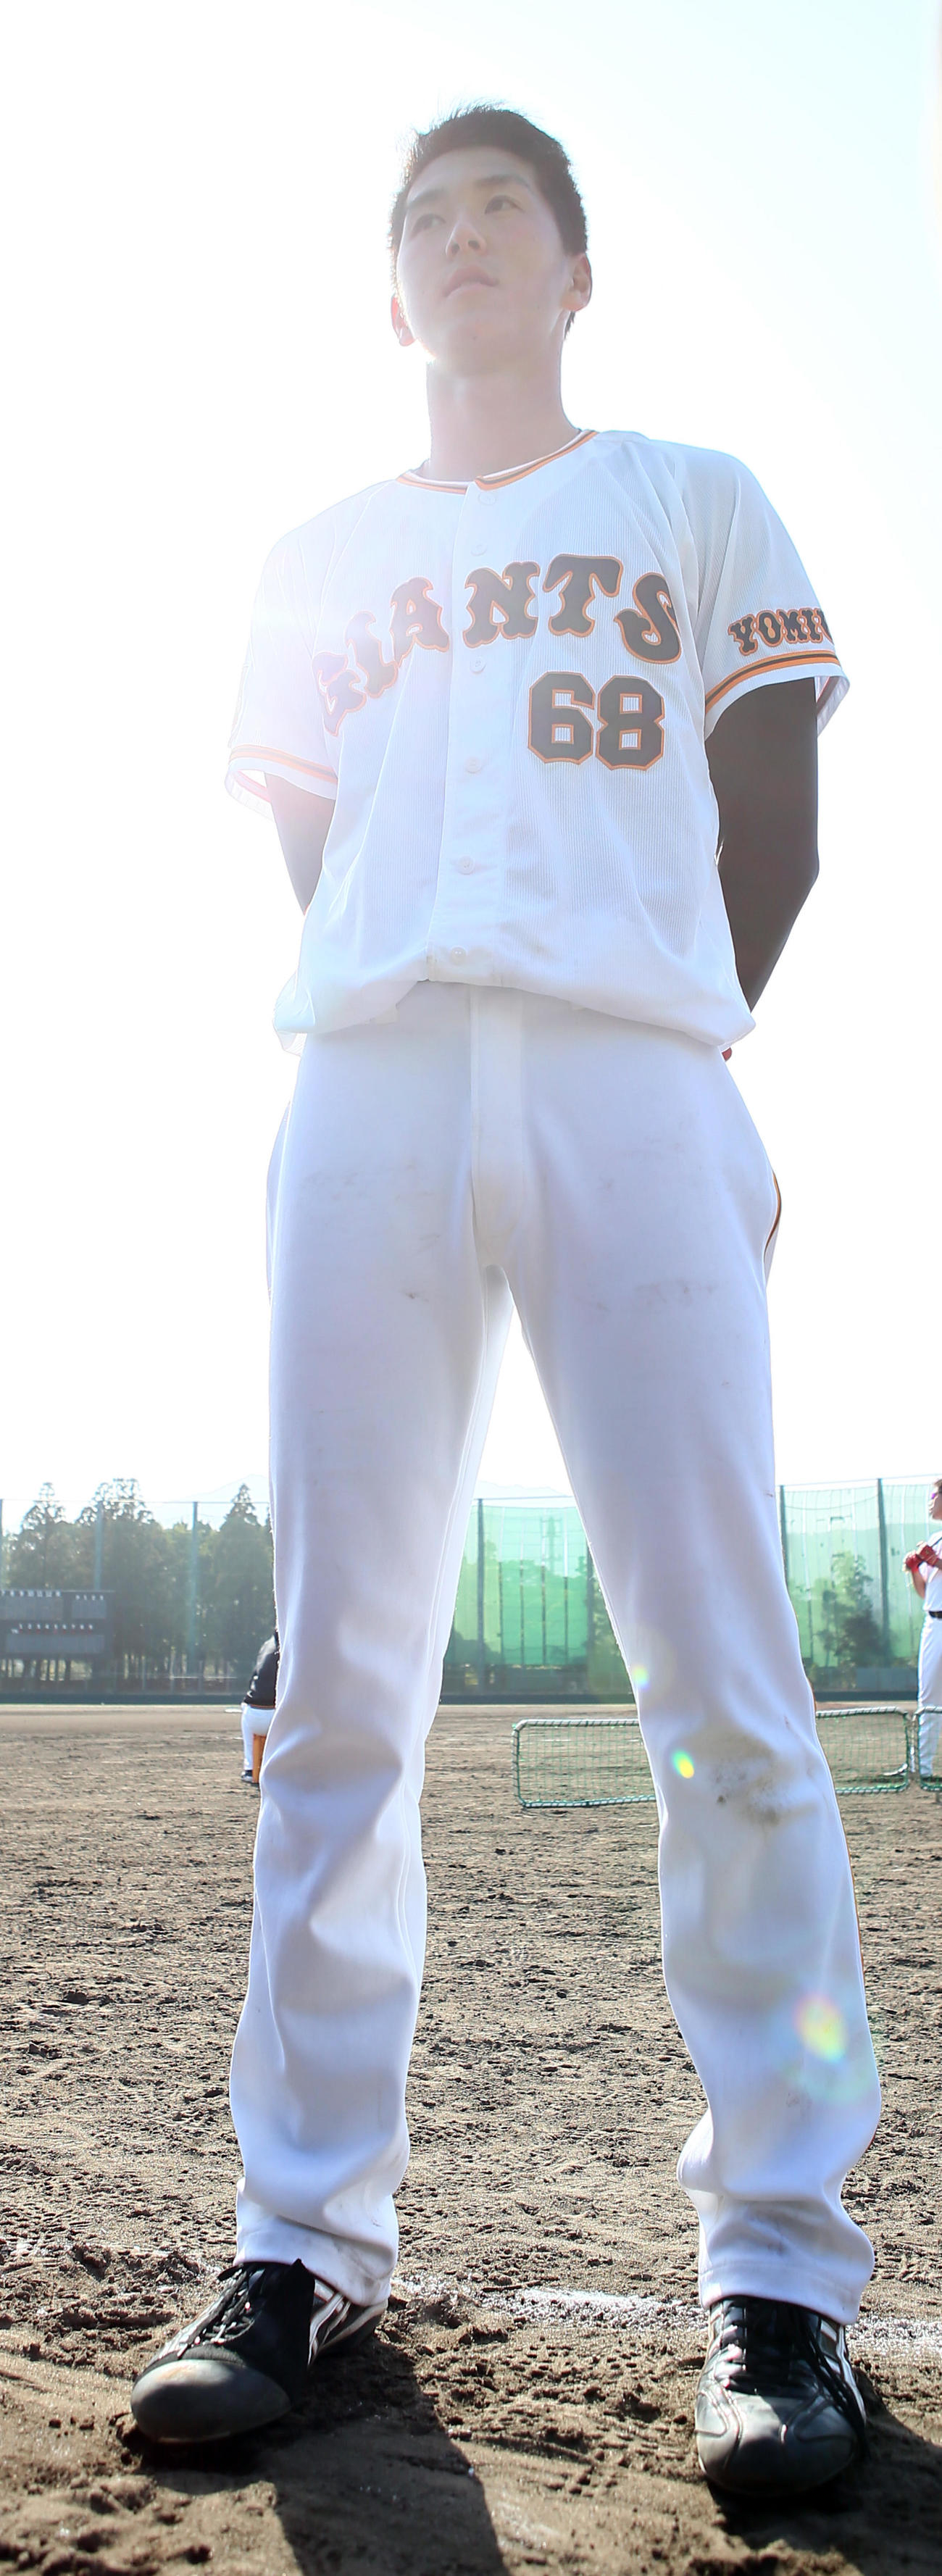 身長2m巨人秋広を原監督が直接指導「そのままで」 - プロ野球写真ニュース : 日刊スポーツ